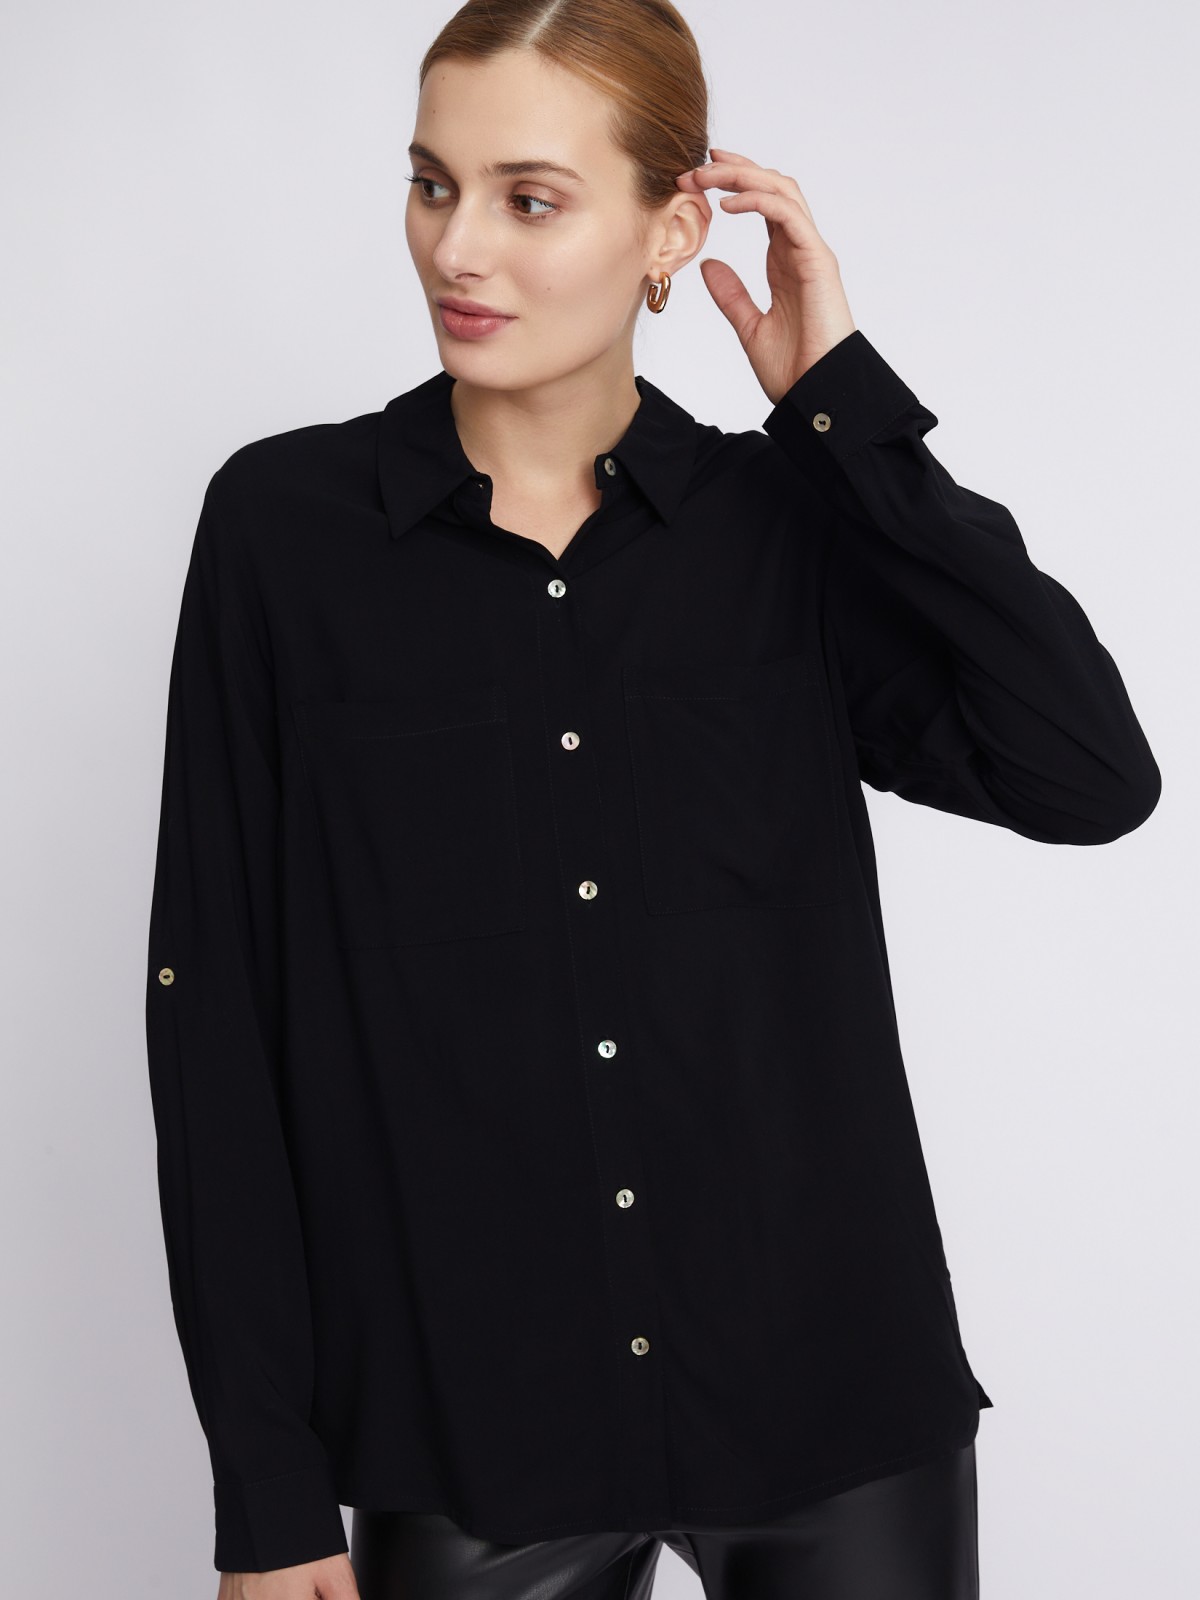 Офисная рубашка из вискозы с карманами и подхватами на рукавах zolla 023311162052, цвет черный, размер S - фото 4